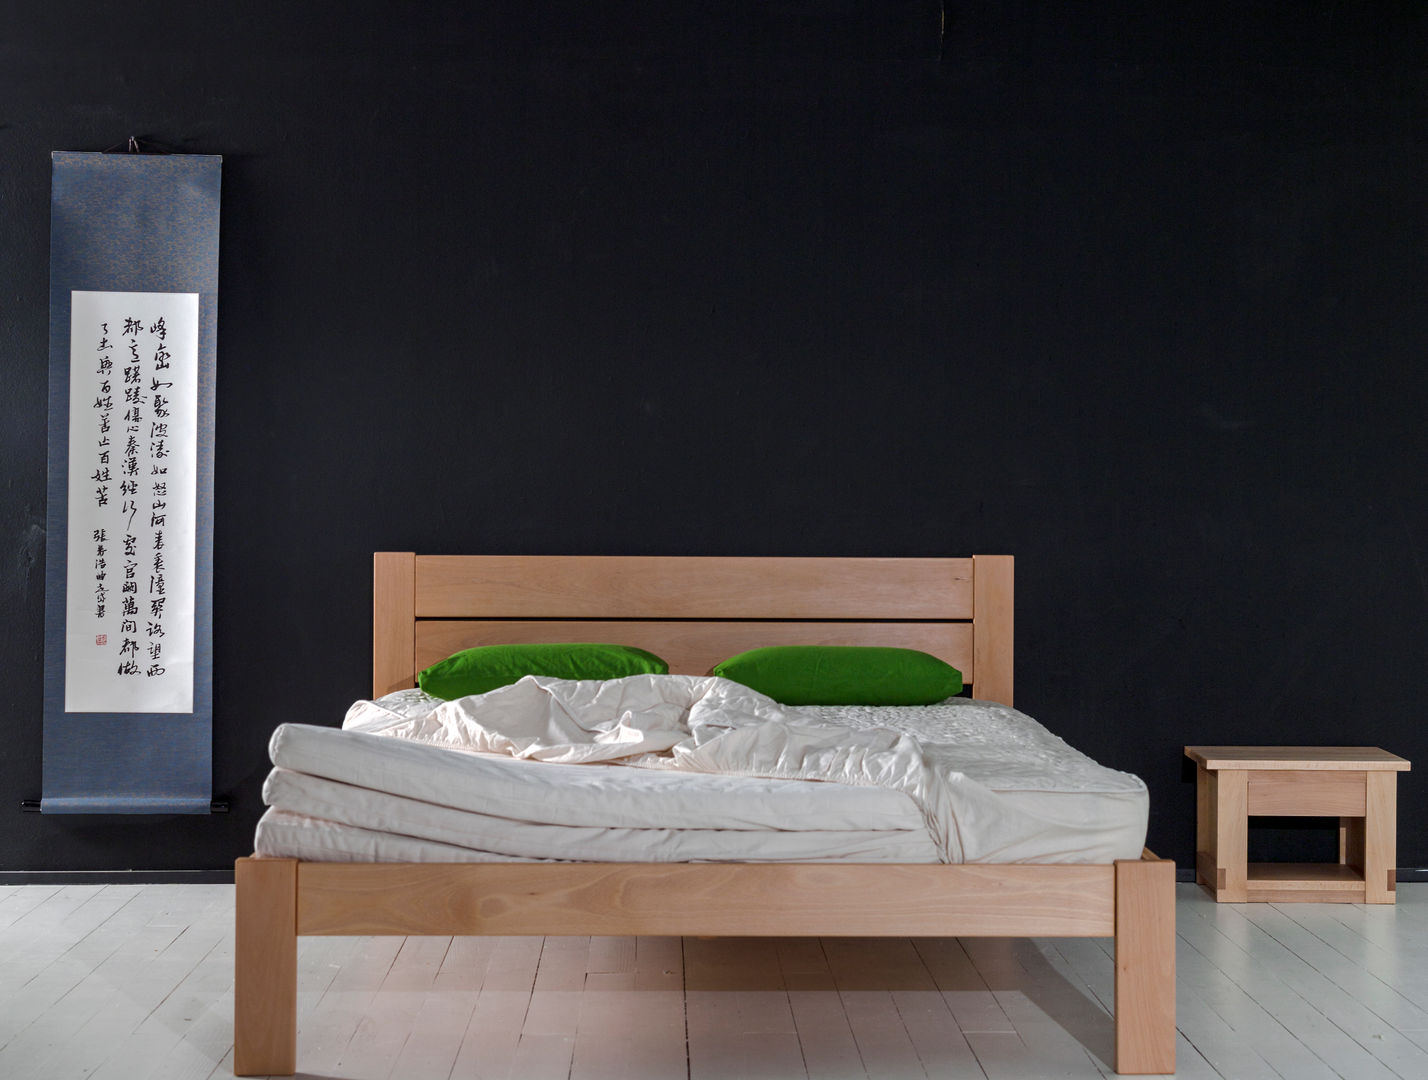 Cama Lit de 150cm. ancho con cabezal de doble tramo y detalle colchonetas Haiku-Futon Dormitorios de estilo minimalista Camas y cabeceras